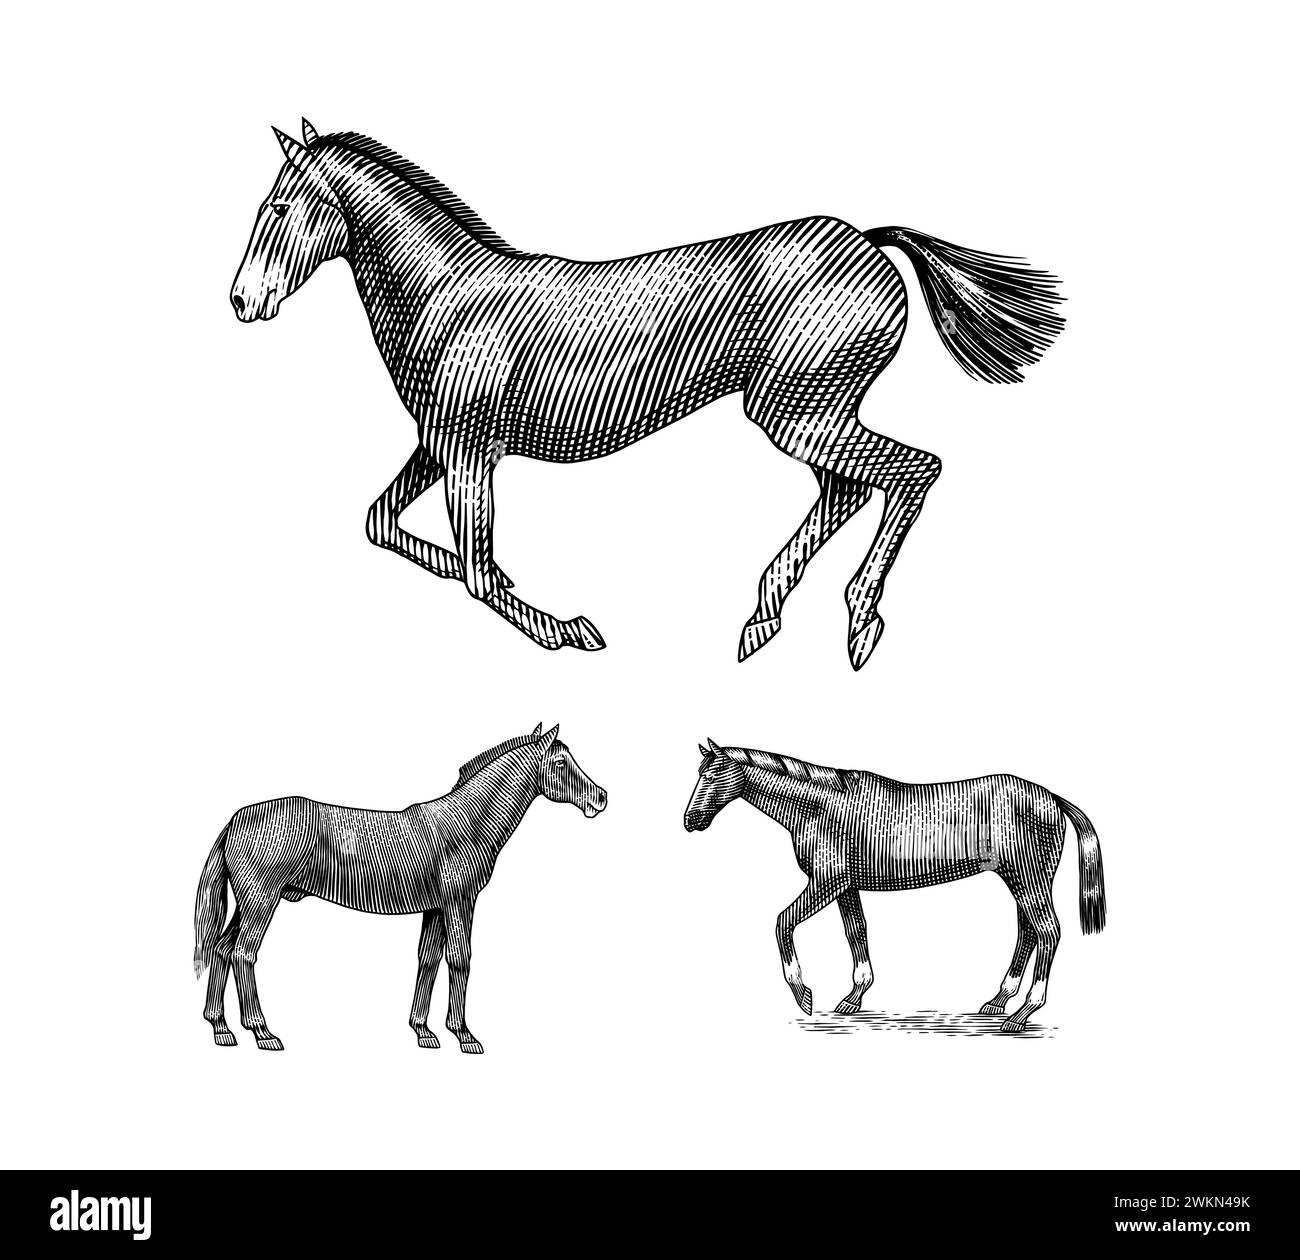 Una serie di cavalli in pose diverse su sfondo bianco. Animale disegnato a mano. Schizzo del contorno del taglio di legno. Illustrazione vettoriale incisa per logo e tatuaggi Illustrazione Vettoriale